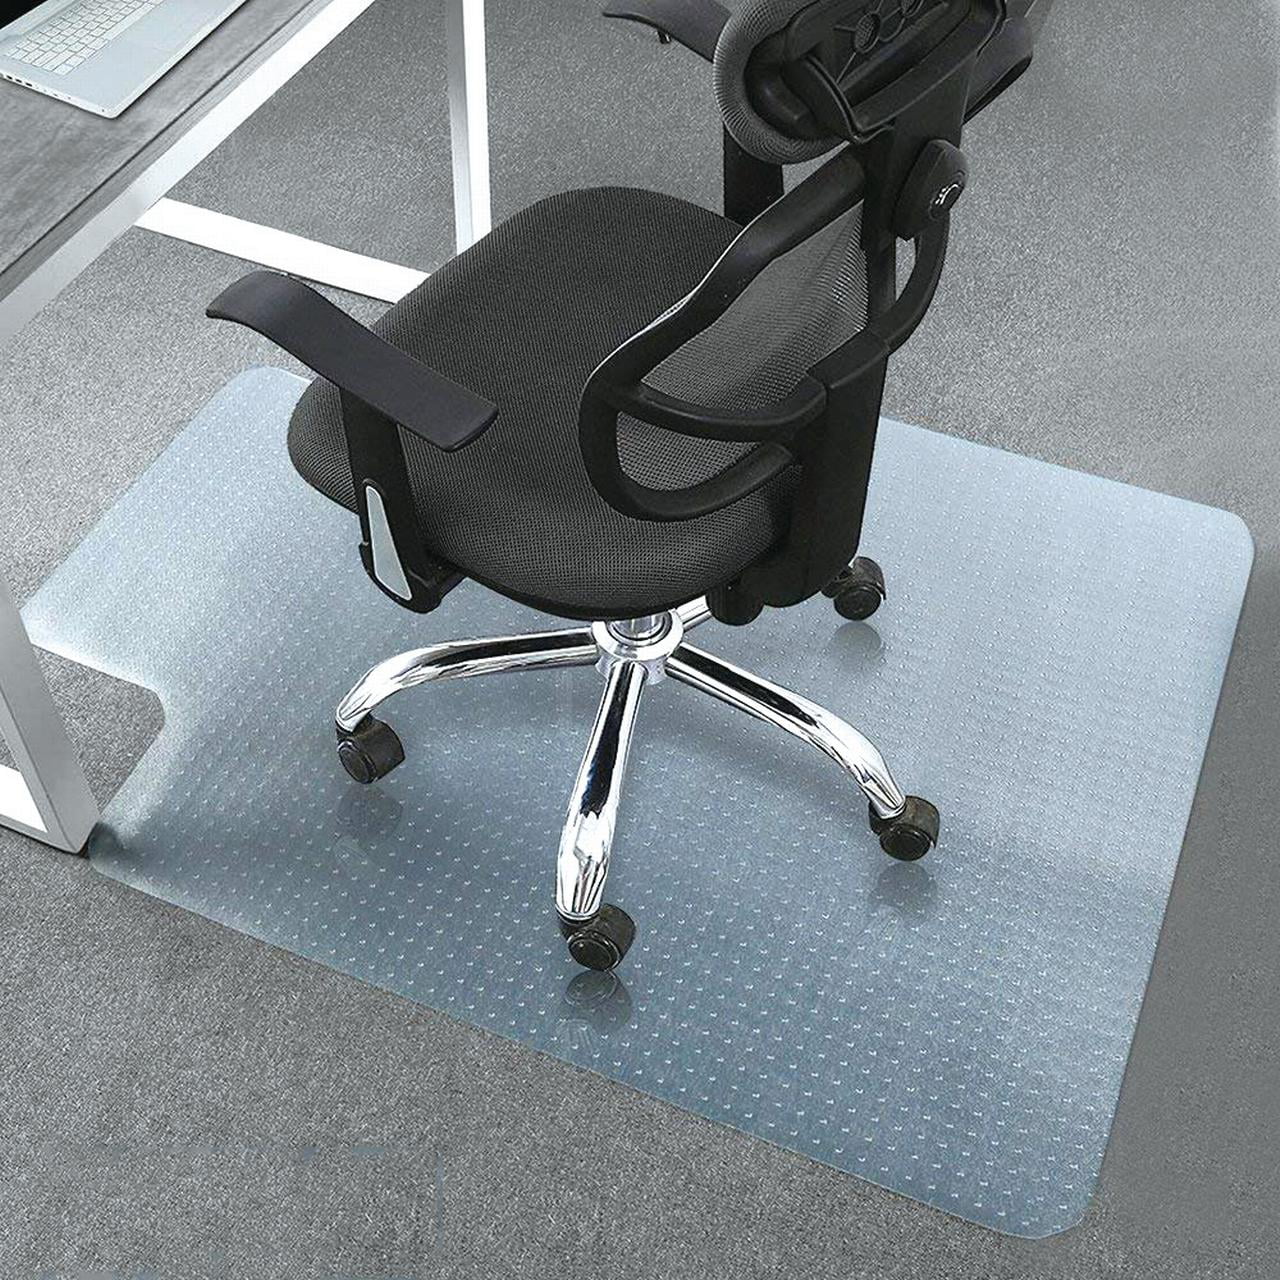 UBesGoo Office Chair mat for Carpet, Floor mat for Office ...